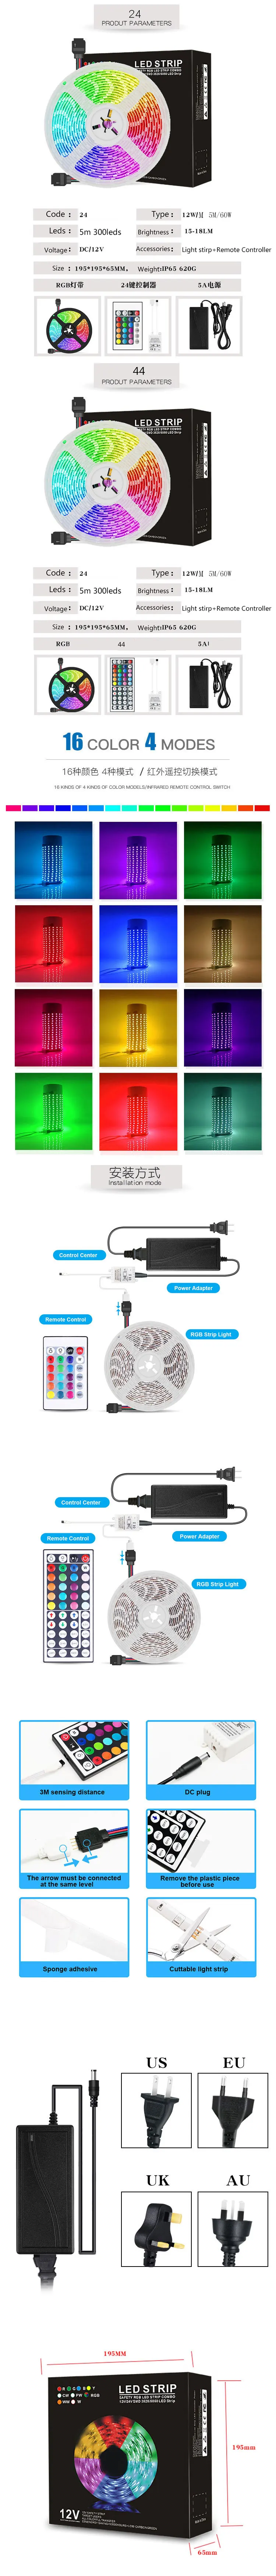 Светодиодный светильник Водонепроницаемая RGB 5050 SMD Светодиодная лента световой ленты кухонная лента диод DC 12 В+ пульт дистанционного управления+ адаптер